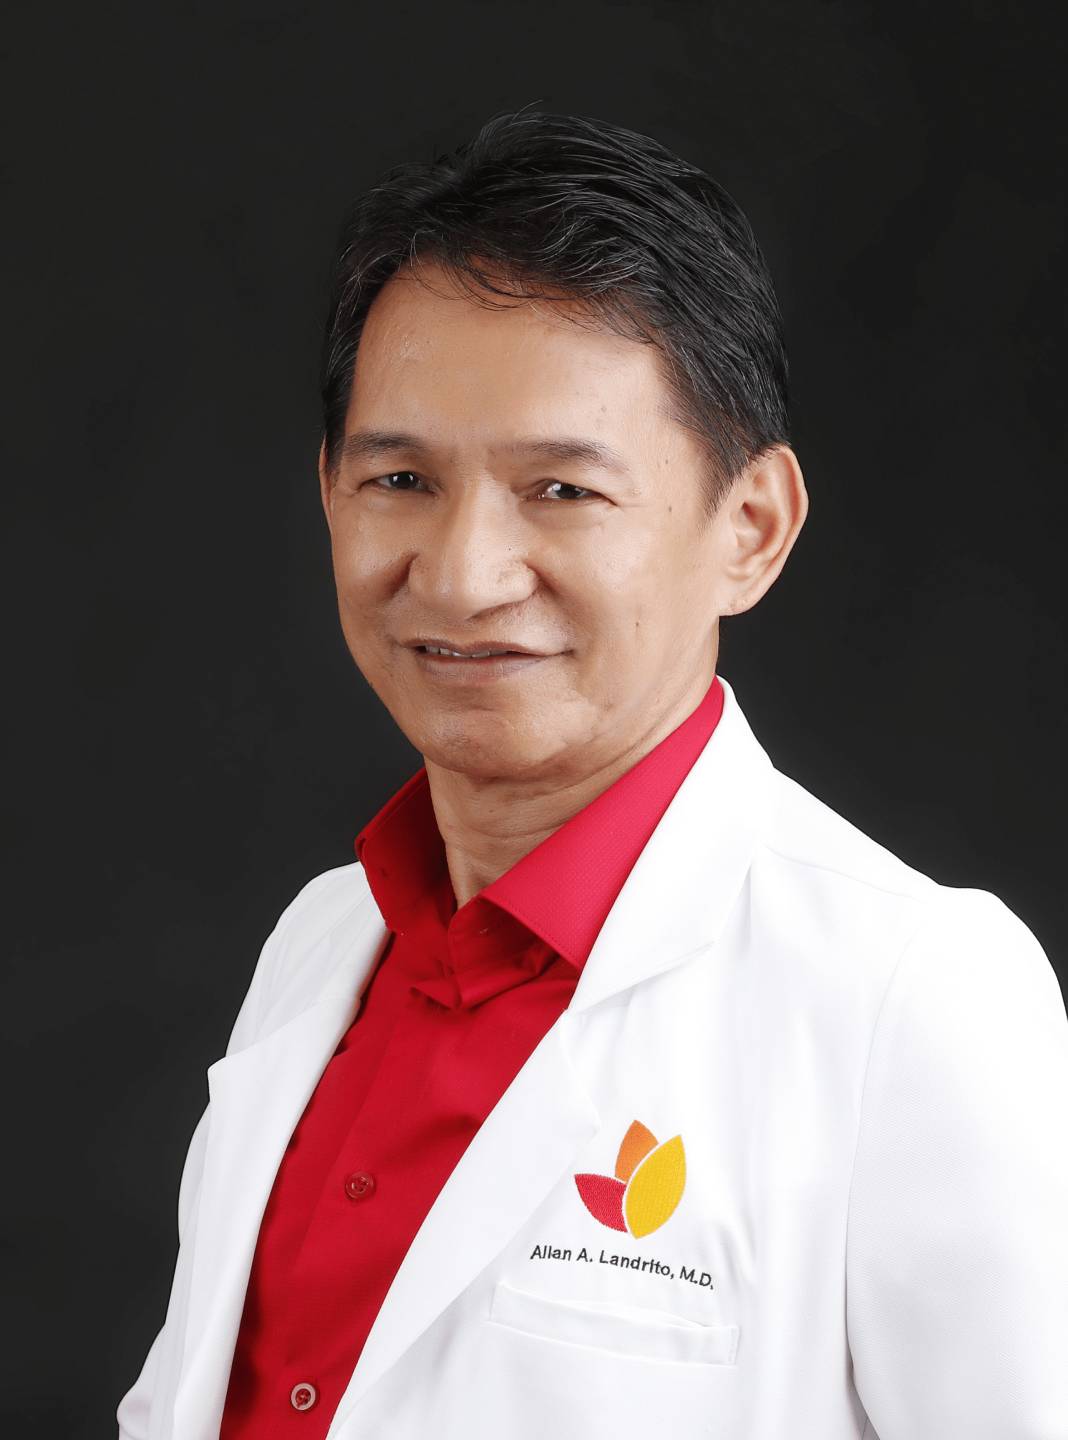 Dr. Allan Landrito